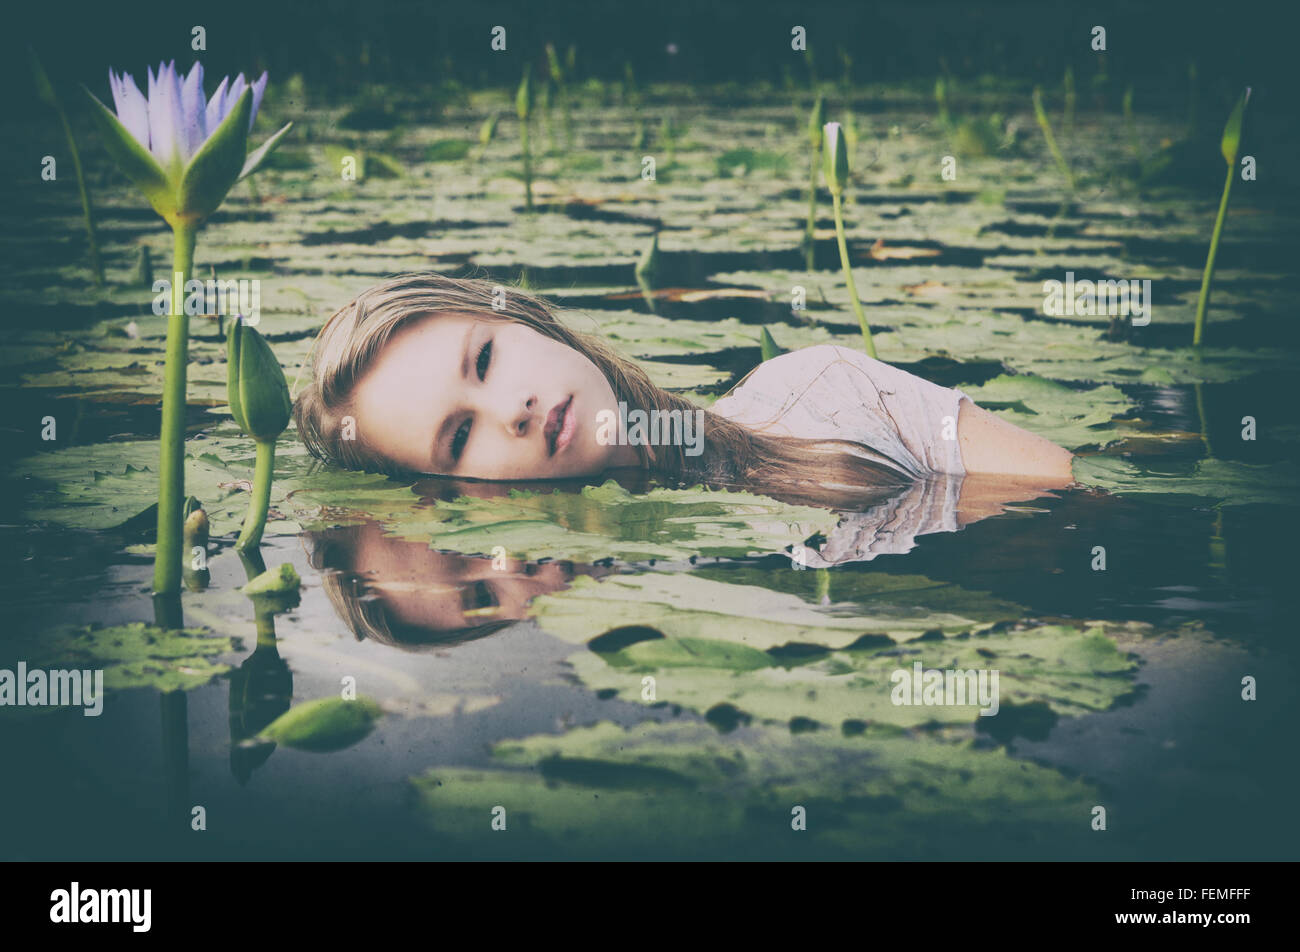 Eine schöne junge blonde Frau schwimmt unter den lila Lilien in einem Teich oder See in einem künstlerischen Ambiente. Gefilterte Bilder. Stockfoto